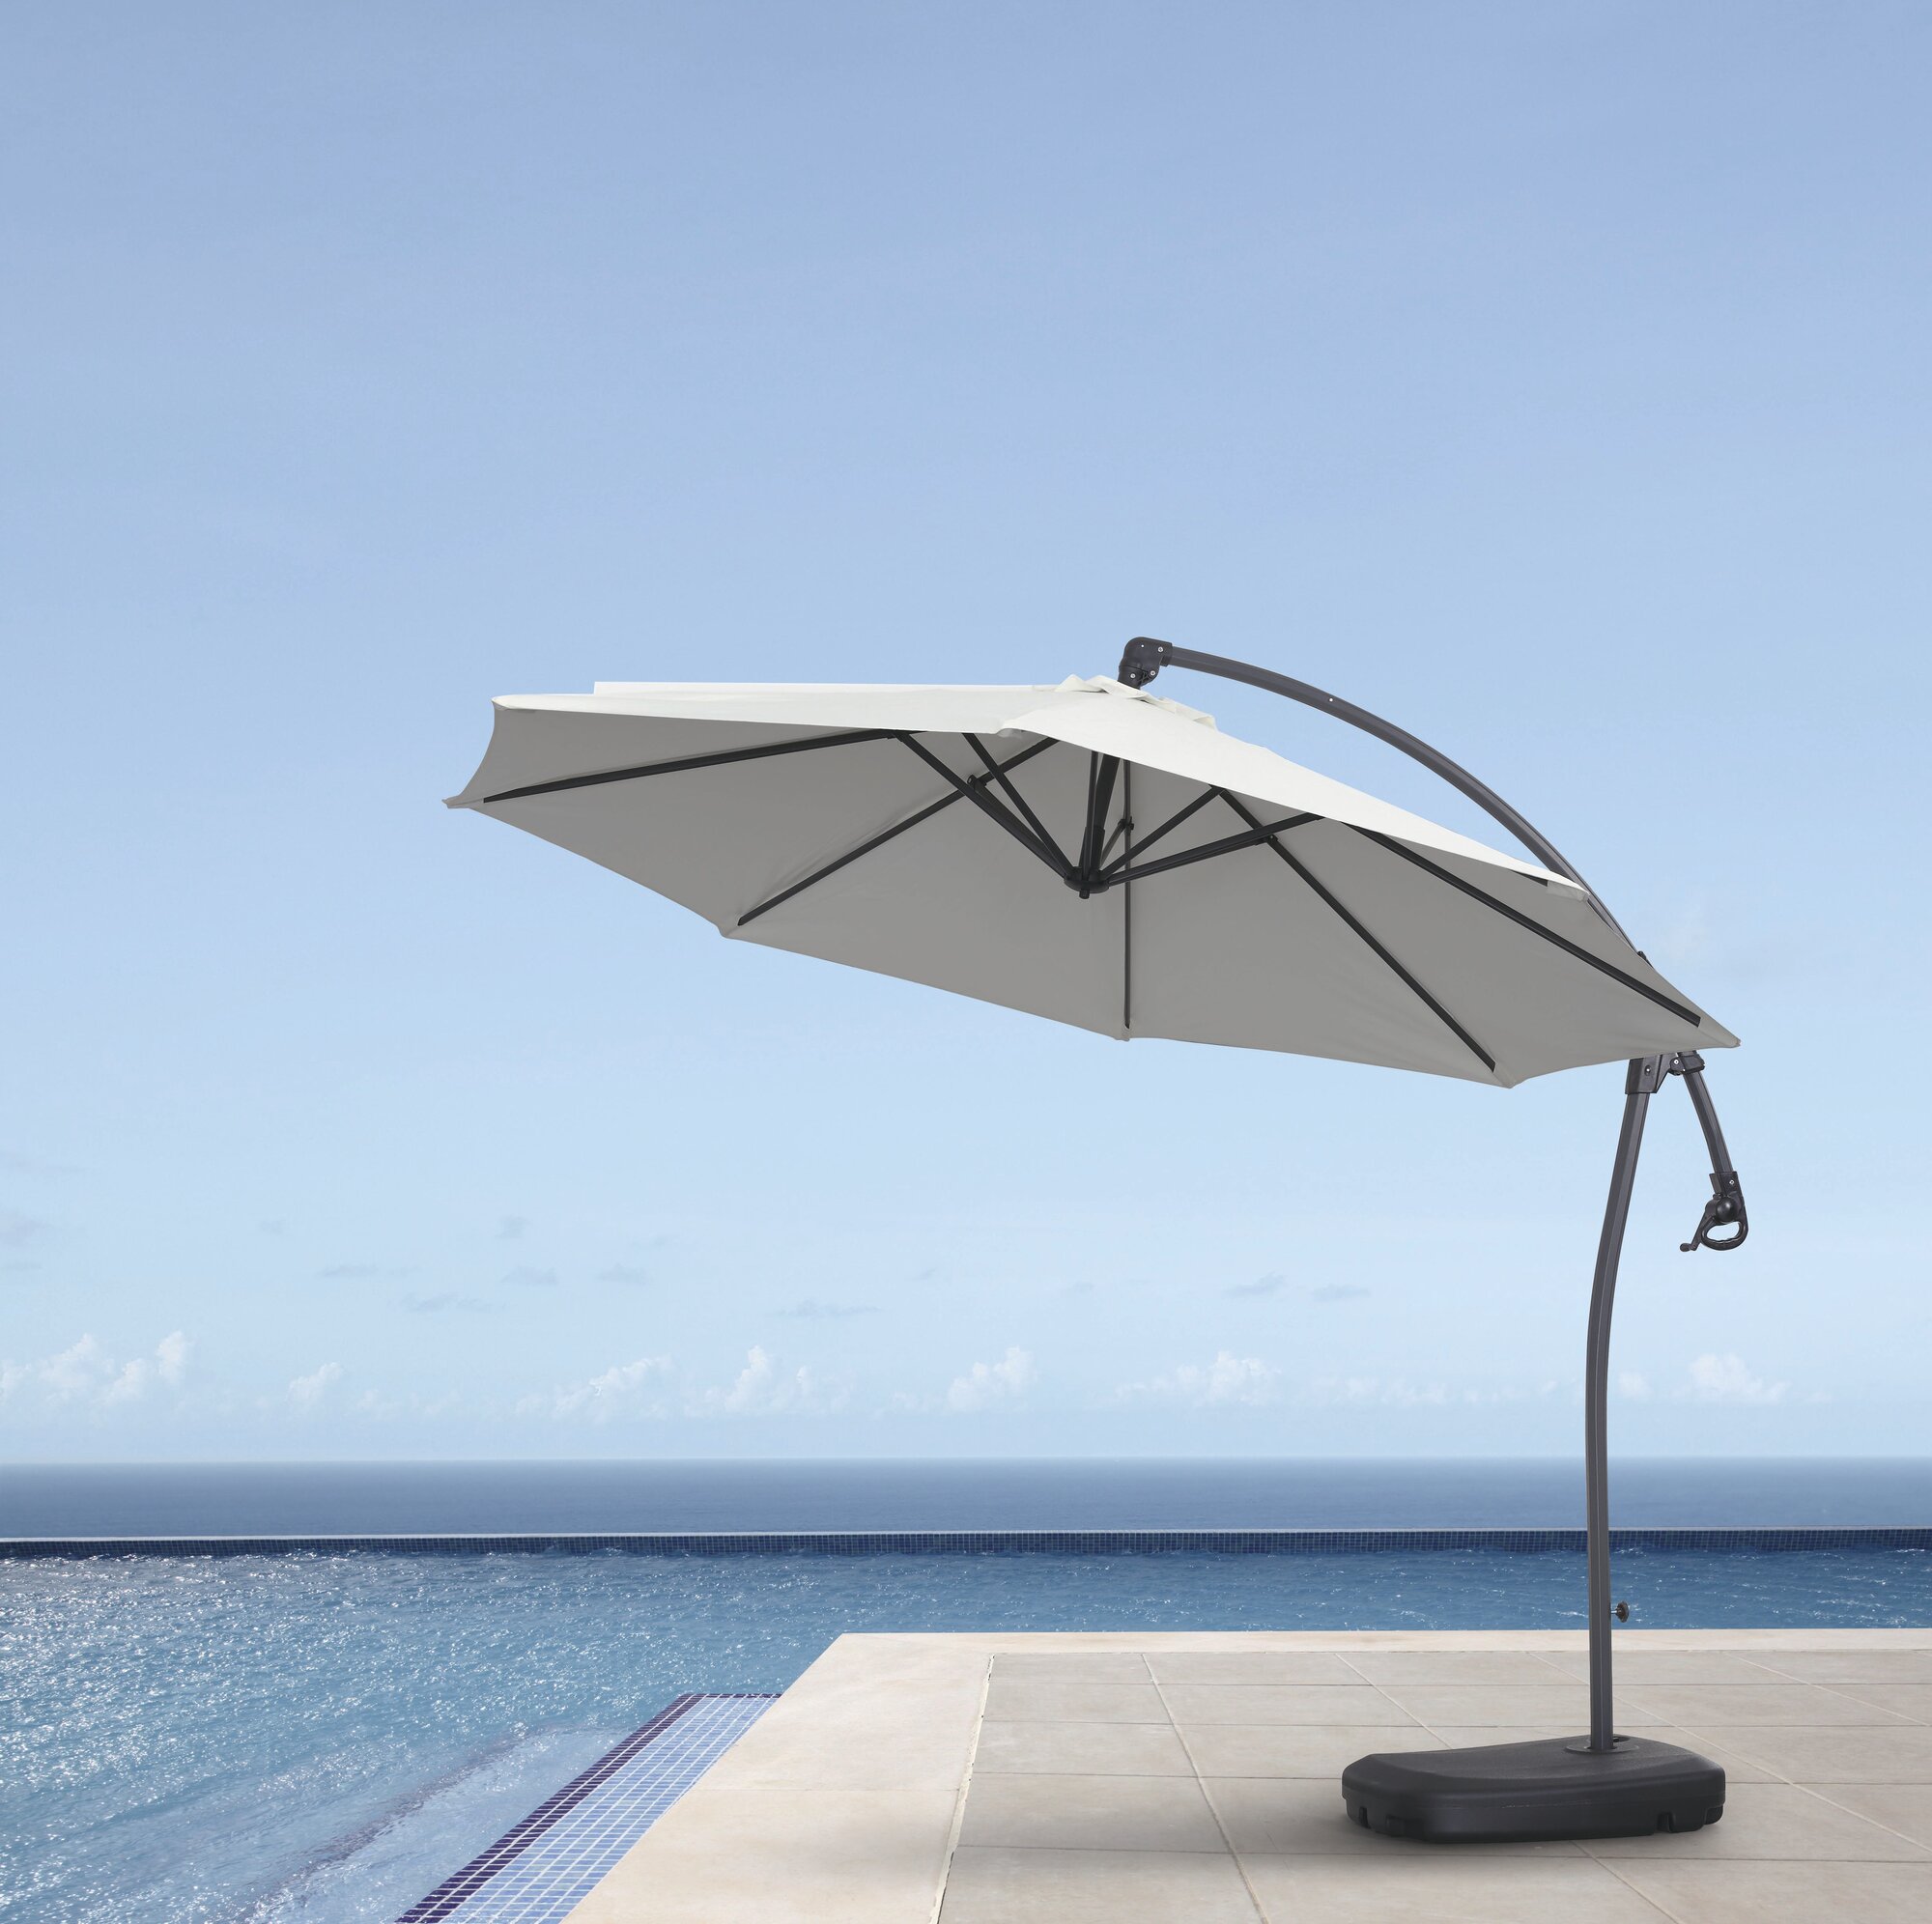 Зонт садовый подвесной Modern 300х300 см белый подставка с резервуаром для воды